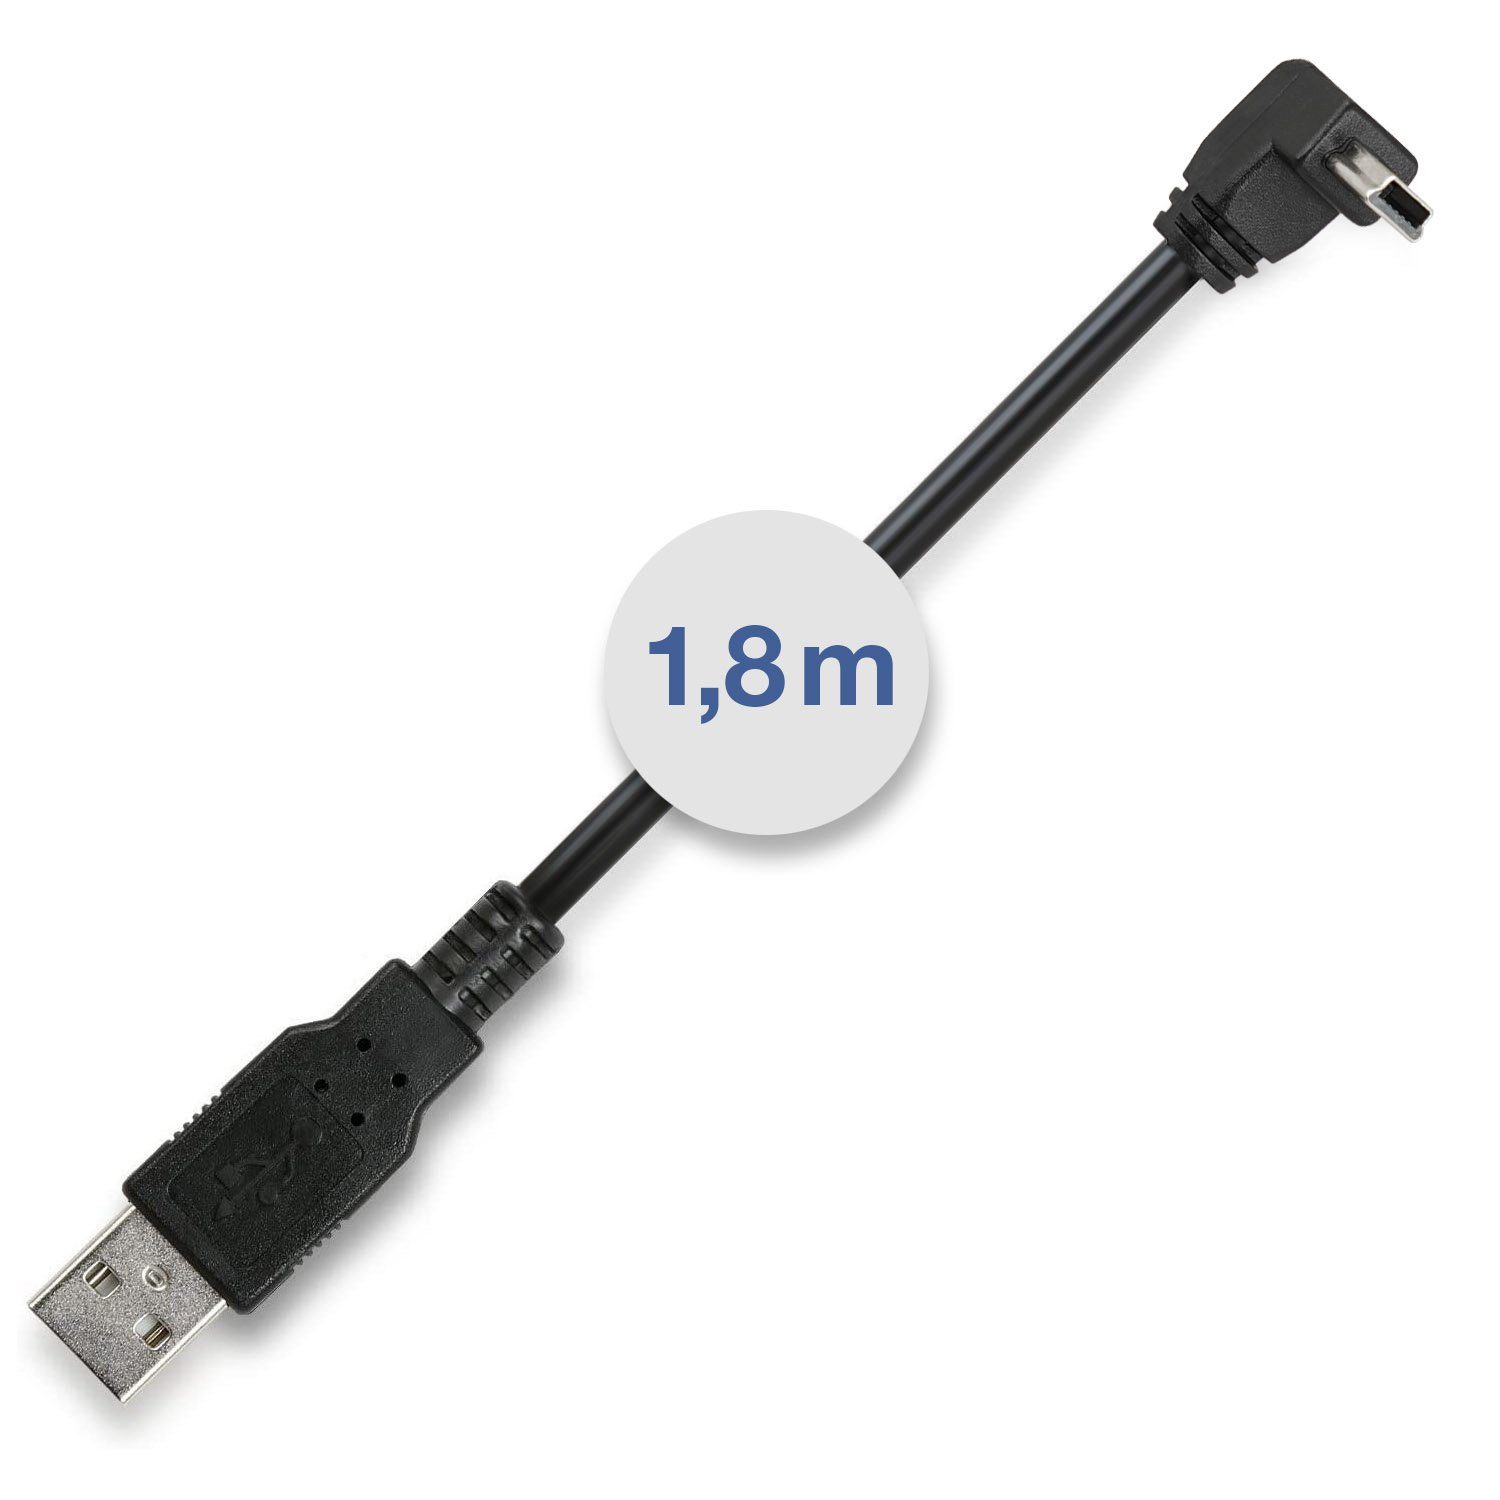 Wicked Chili 1,8m MiniUSB Ladekabel für Navi; 90° abgewinkelt  Gaming-Controllerkabel, 90° abgewinkel, Mini USB. USB-A (180 cm), 90°  abgewinkelter mini-USB Stecker ideal für Auto-Navigationsgerät